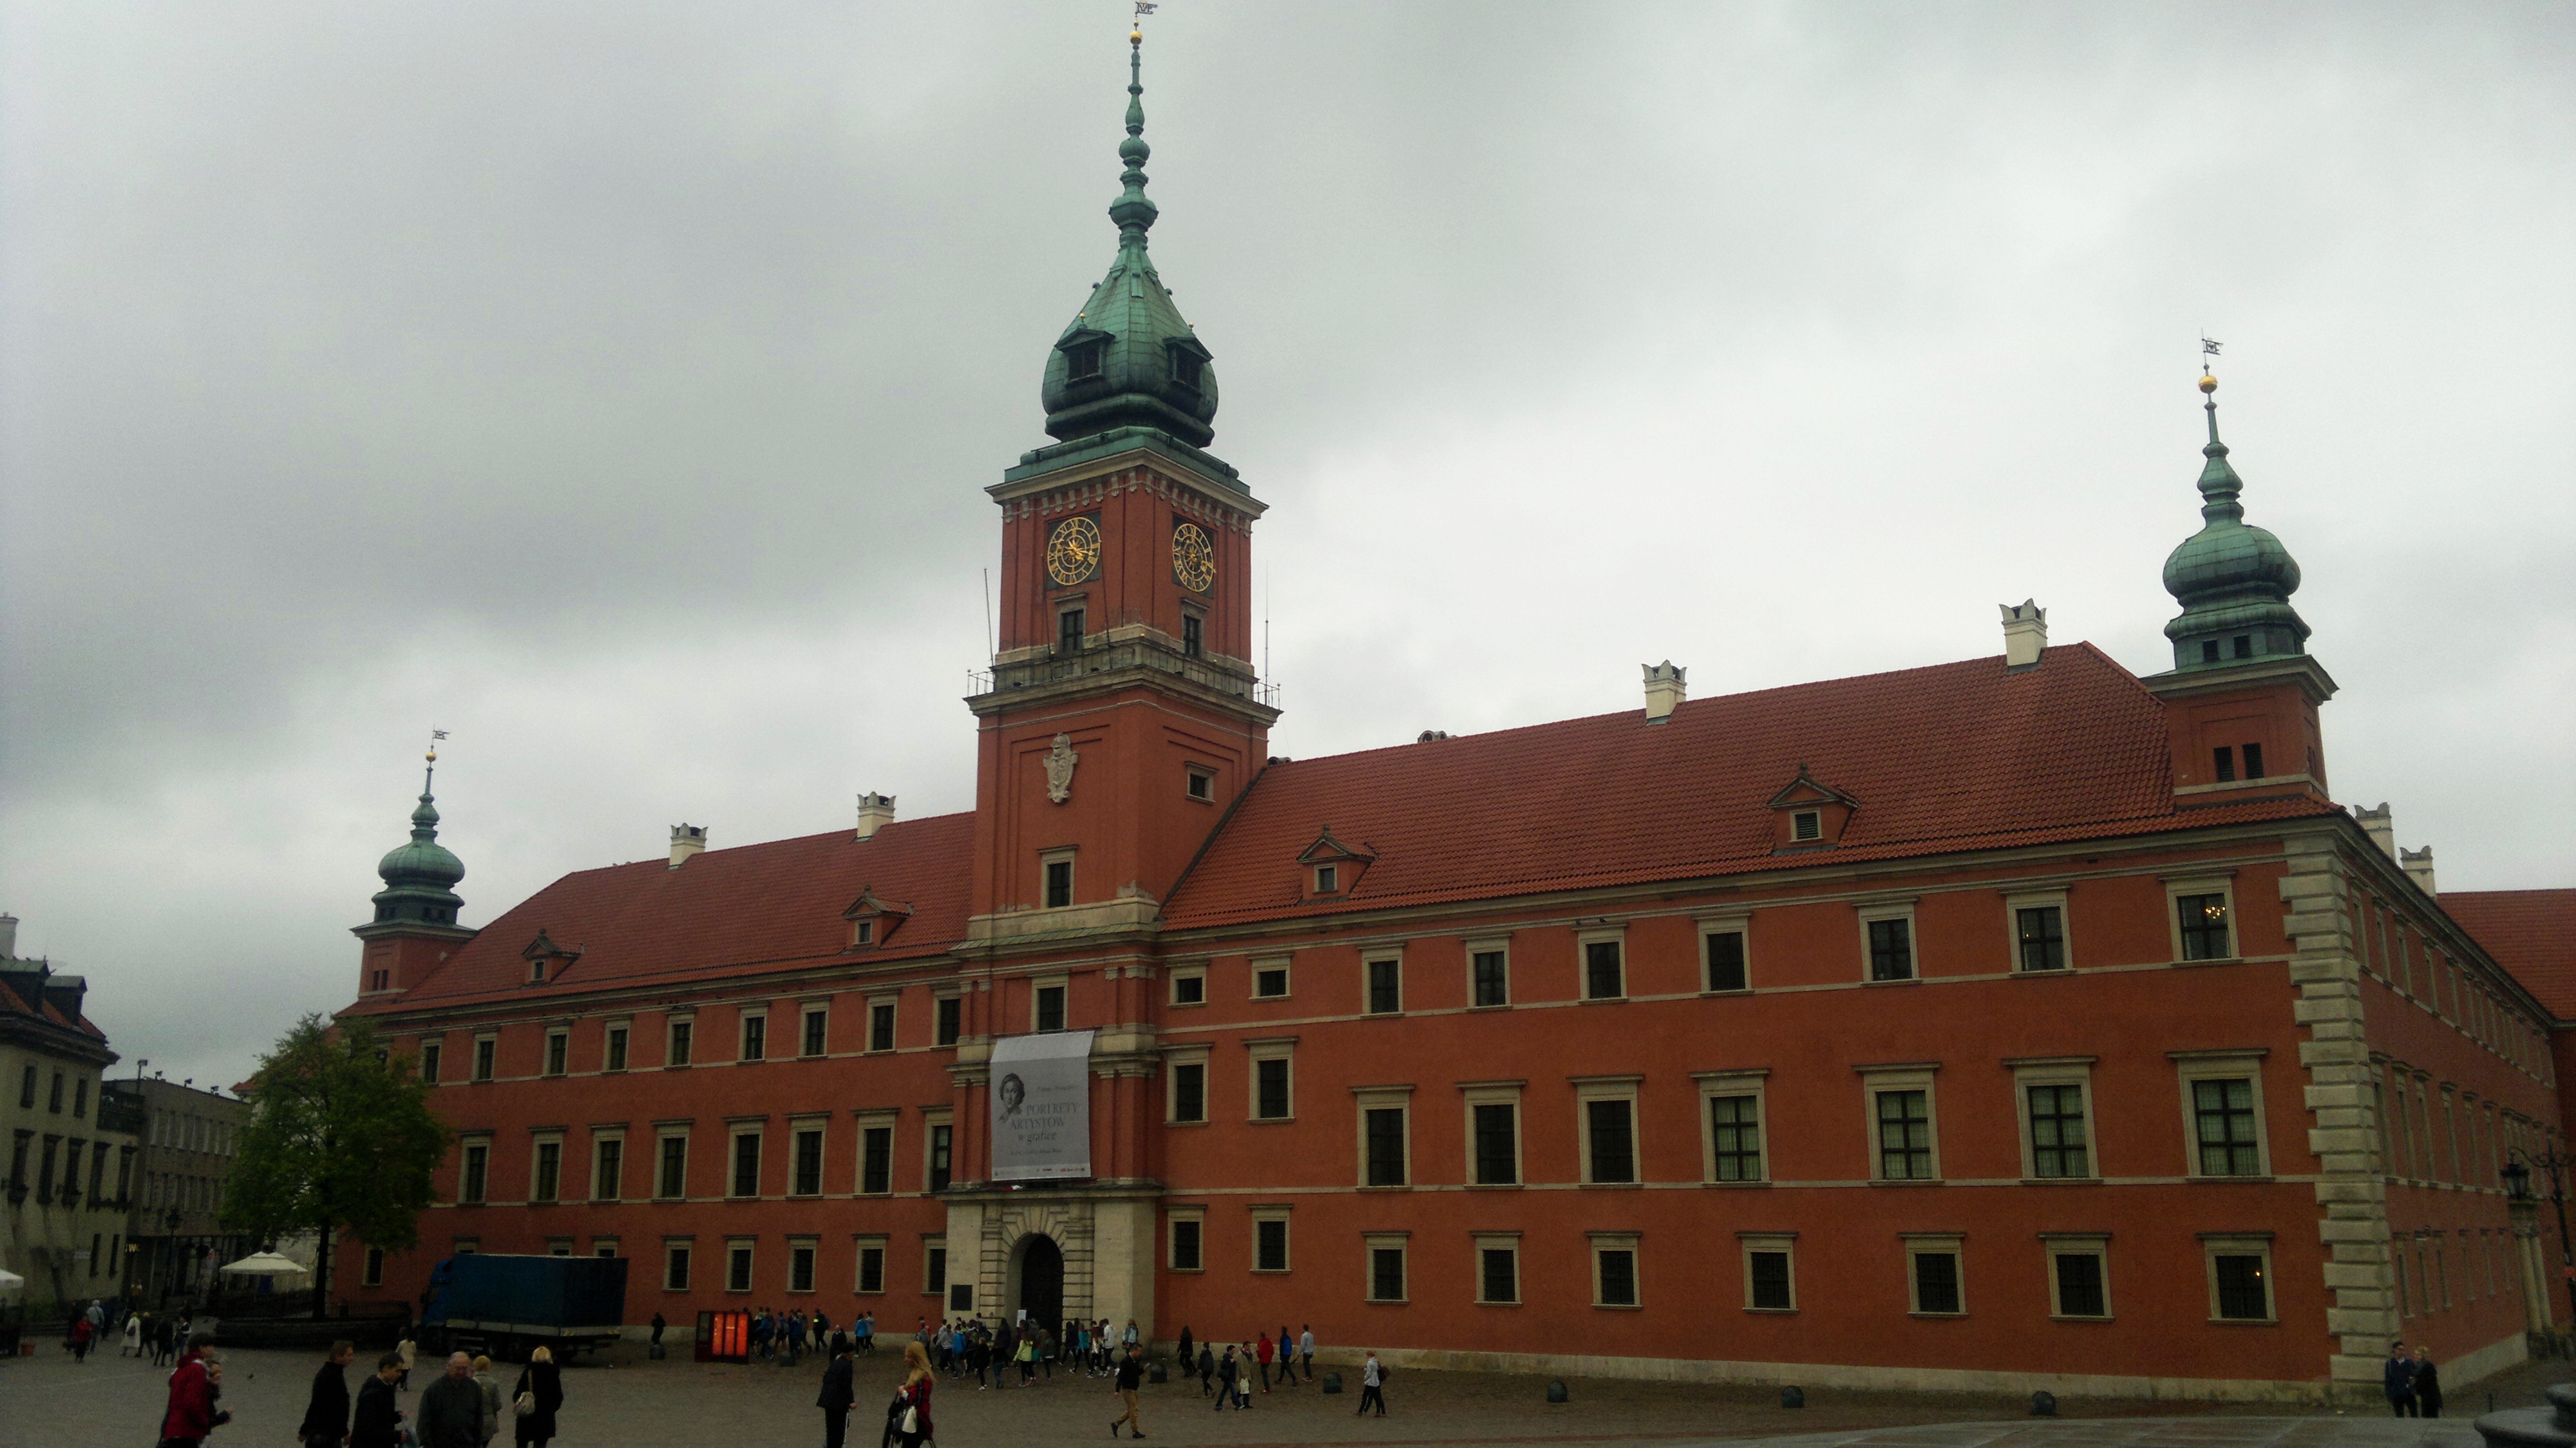 The Royal Castle (Zamek Królewski), Warsaw